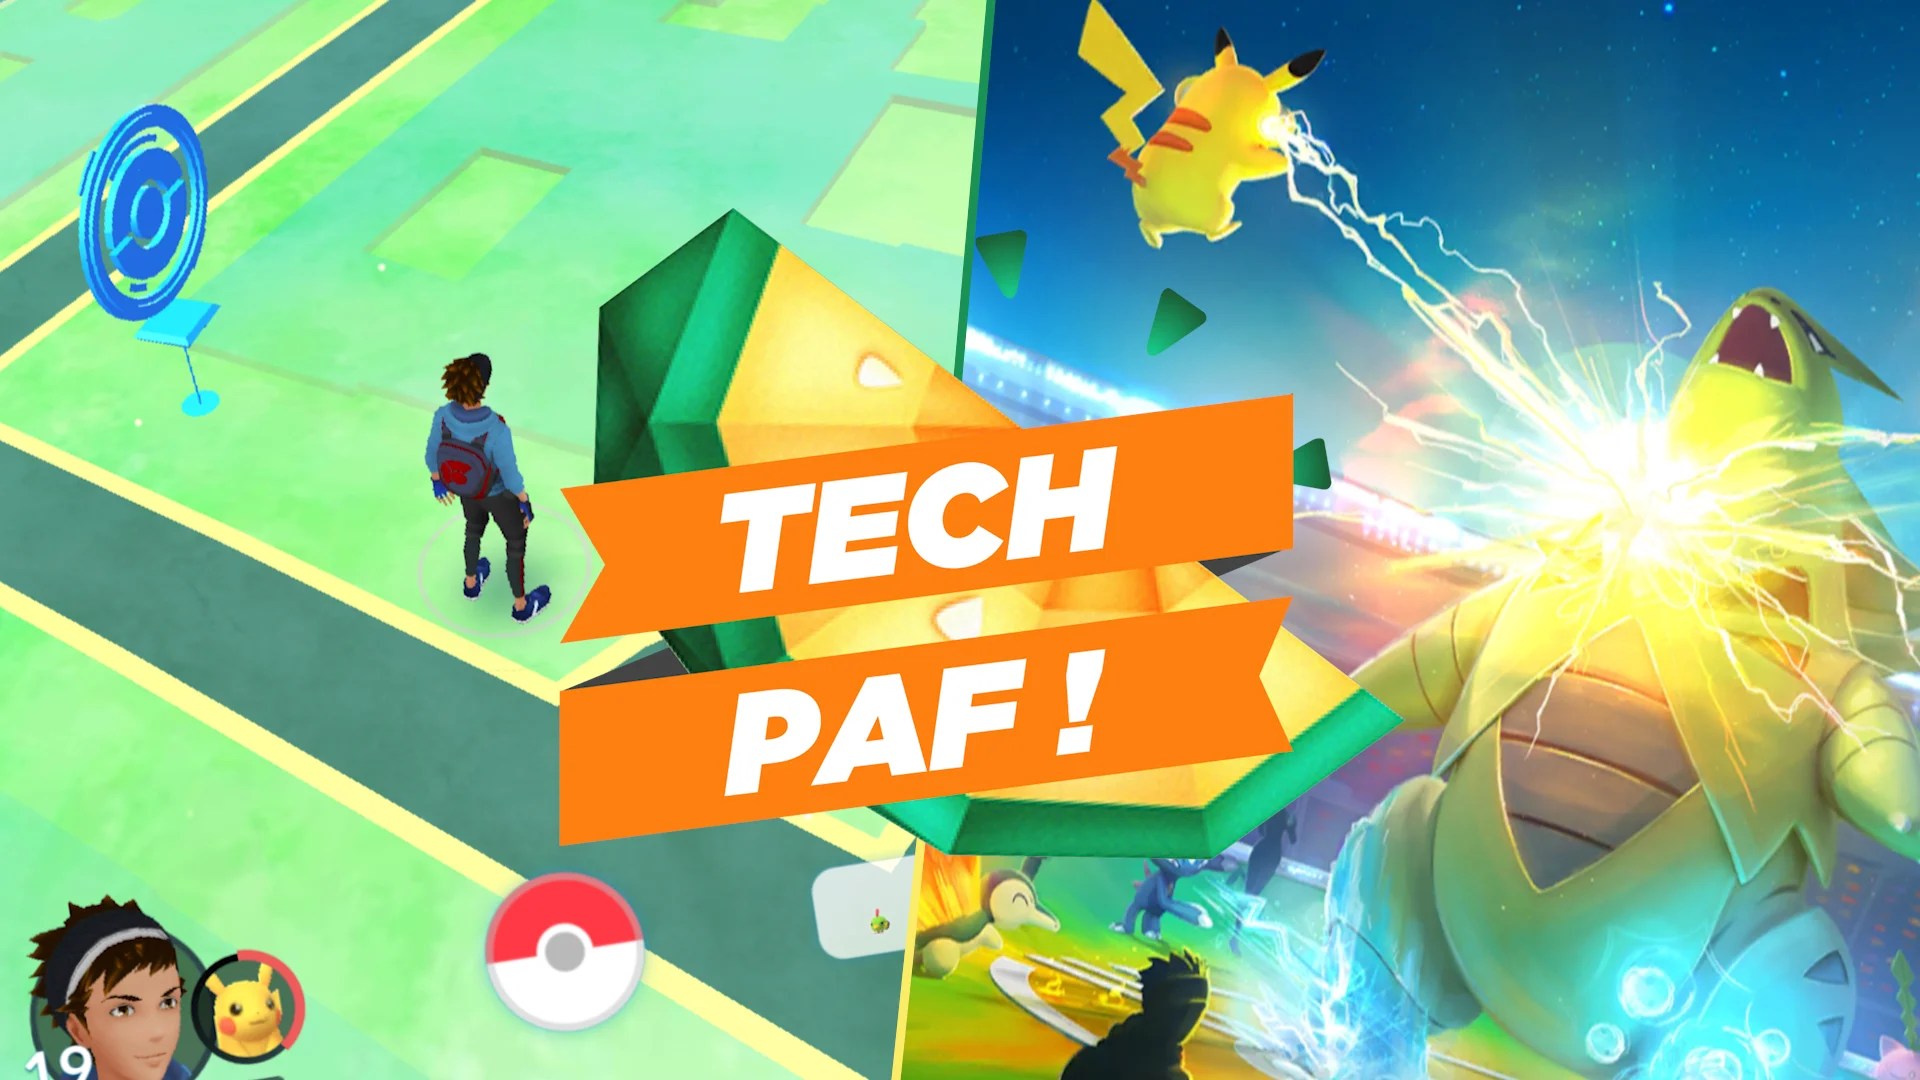 Buzz d’un été ou jeu à long terme, quel avenir pour Pokémon Go ? – Tech’PAF #16